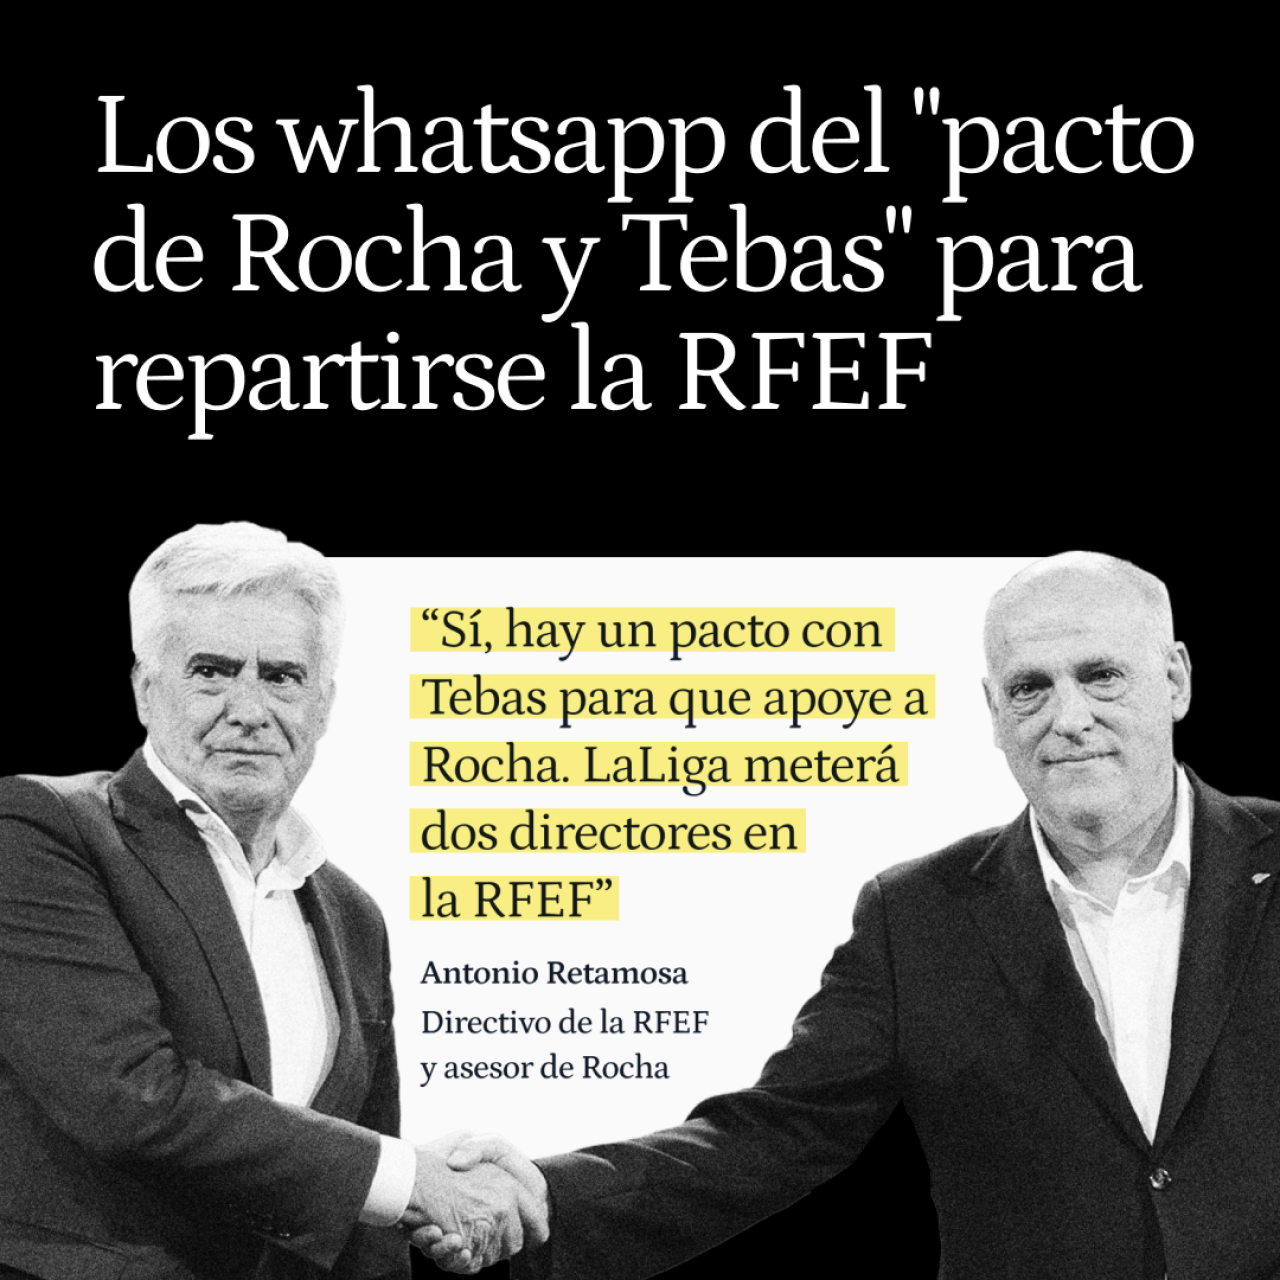 Los whatsapp del "pacto entre Rocha y Tebas" para repartirse la RFEF: "LaLiga meterá dos directores"